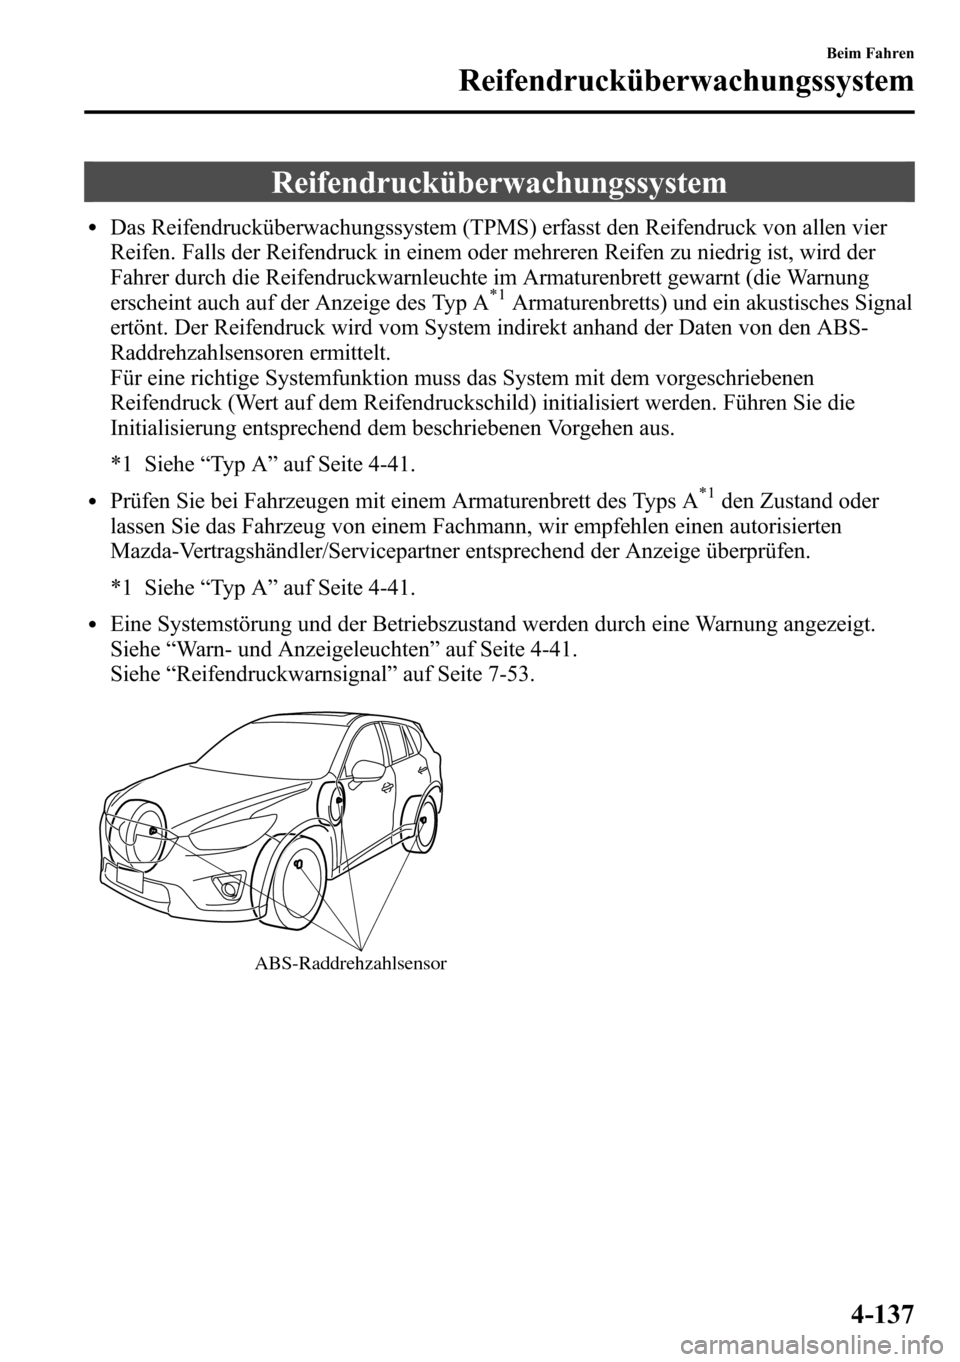 MAZDA MODEL CX-5 2013  Betriebsanleitung (in German) Reifendrucküberwachungssystem
lDas Reifendrucküberwachungssystem (TPMS) erfasst den Reifendruck von allen vier
Reifen. Falls der Reifendruck in einem oder mehreren Reifen zu niedrig ist, wird der
Fa